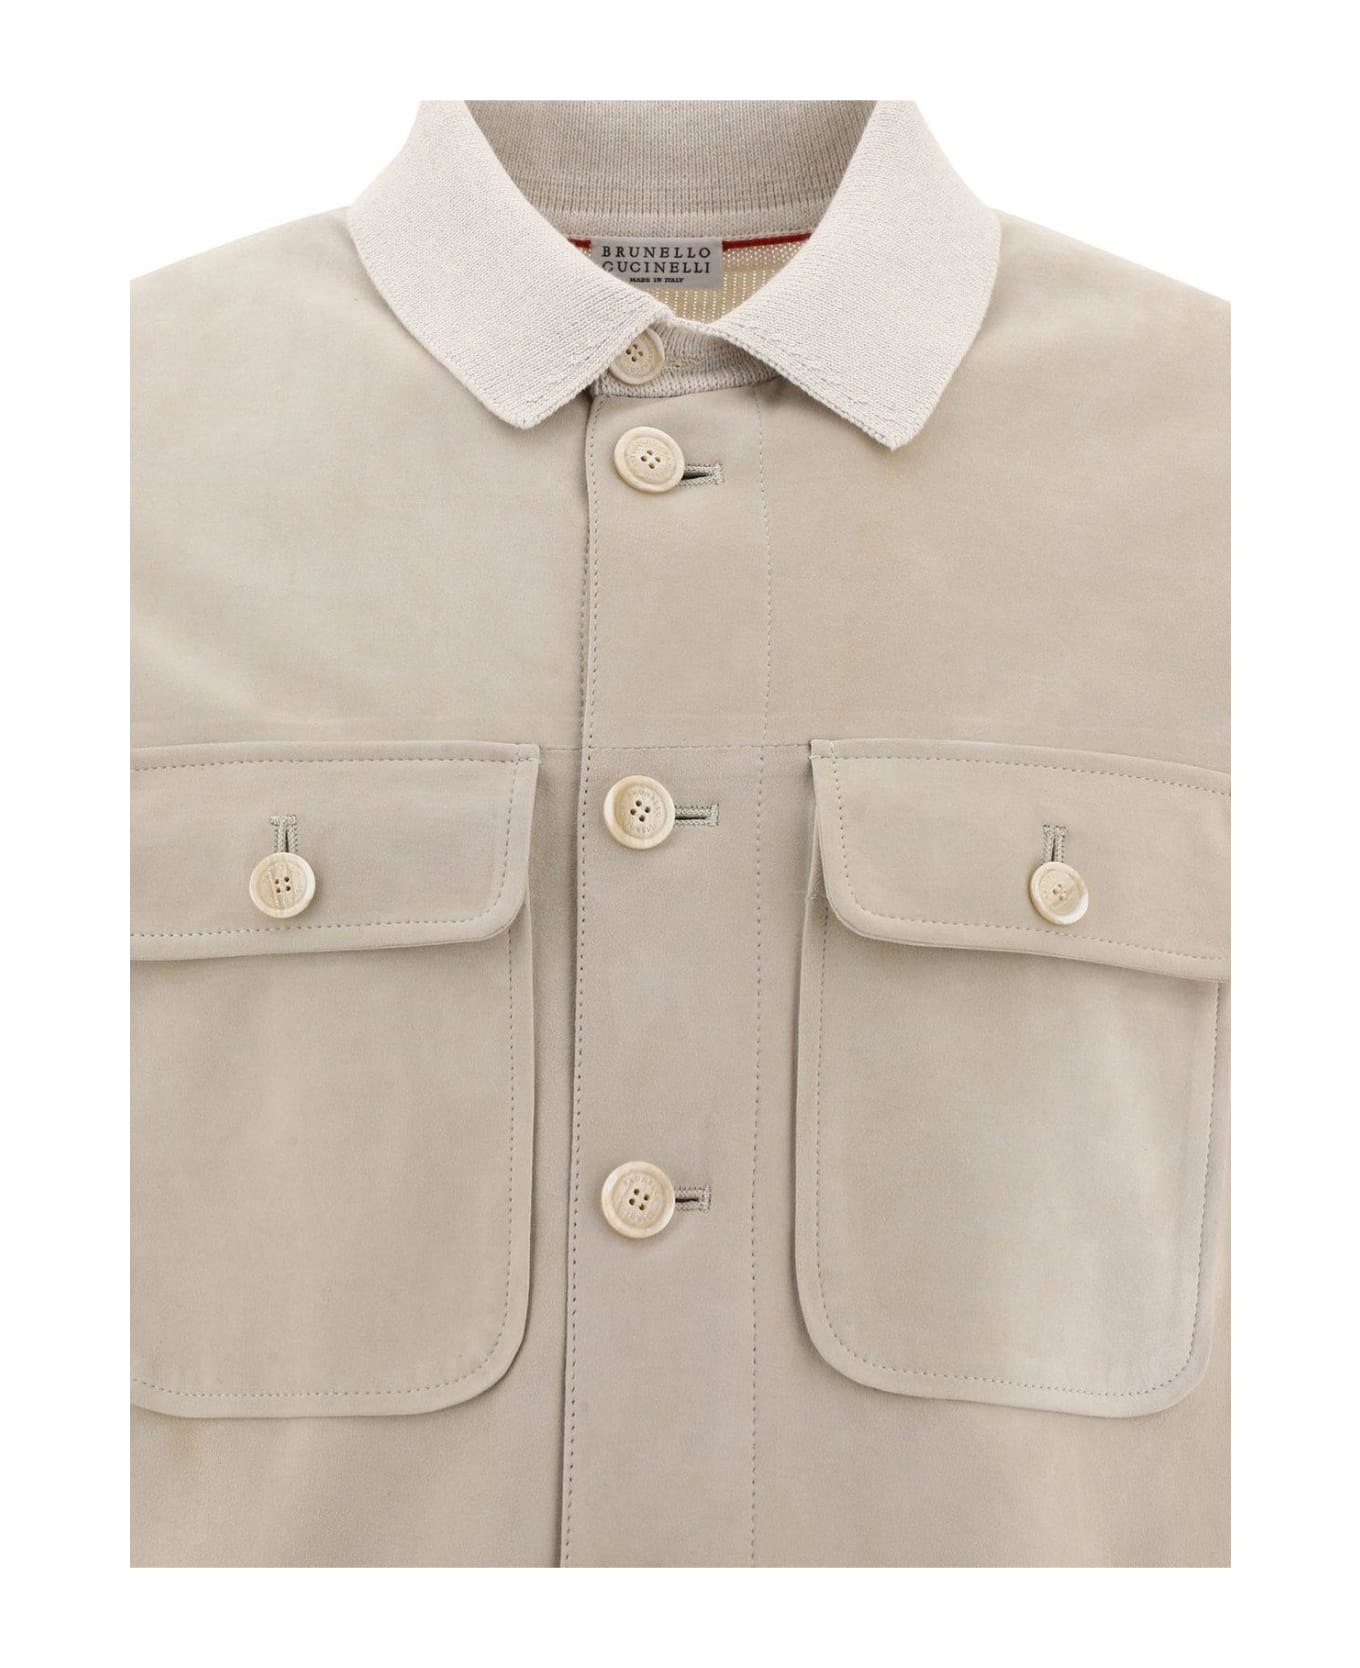 Brunello Cucinelli Button-up Shirt Jacket